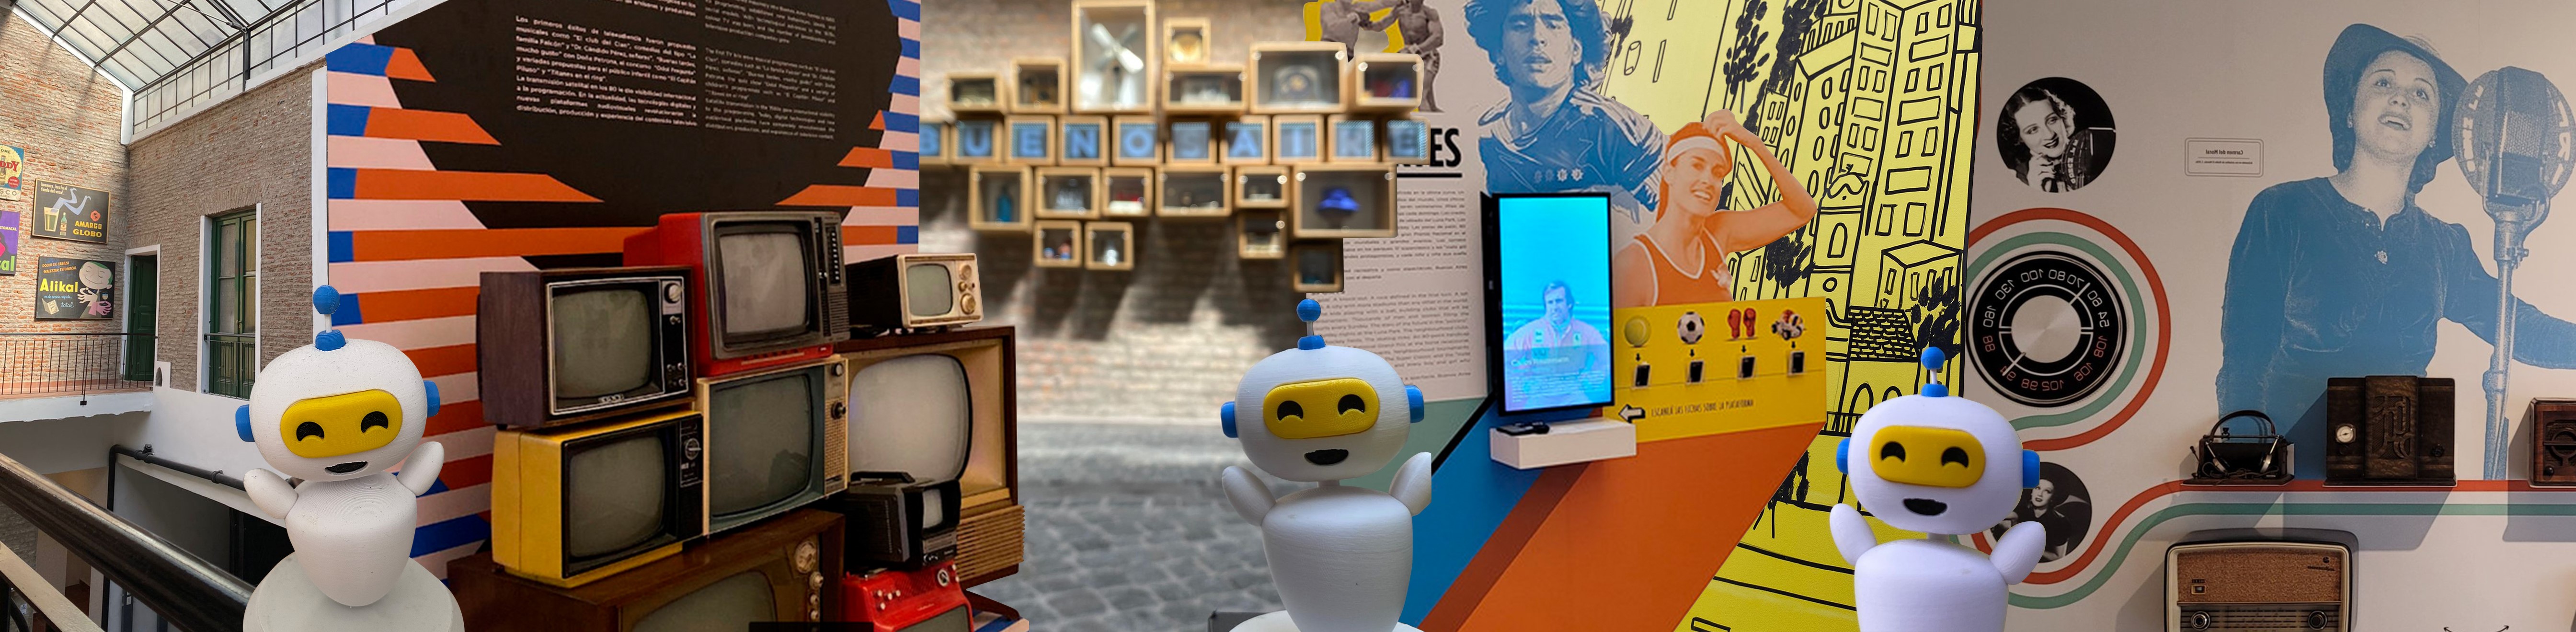 El Buenos Aires Museo y Boti ofrecen una inédita propuesta de cultura interactiva